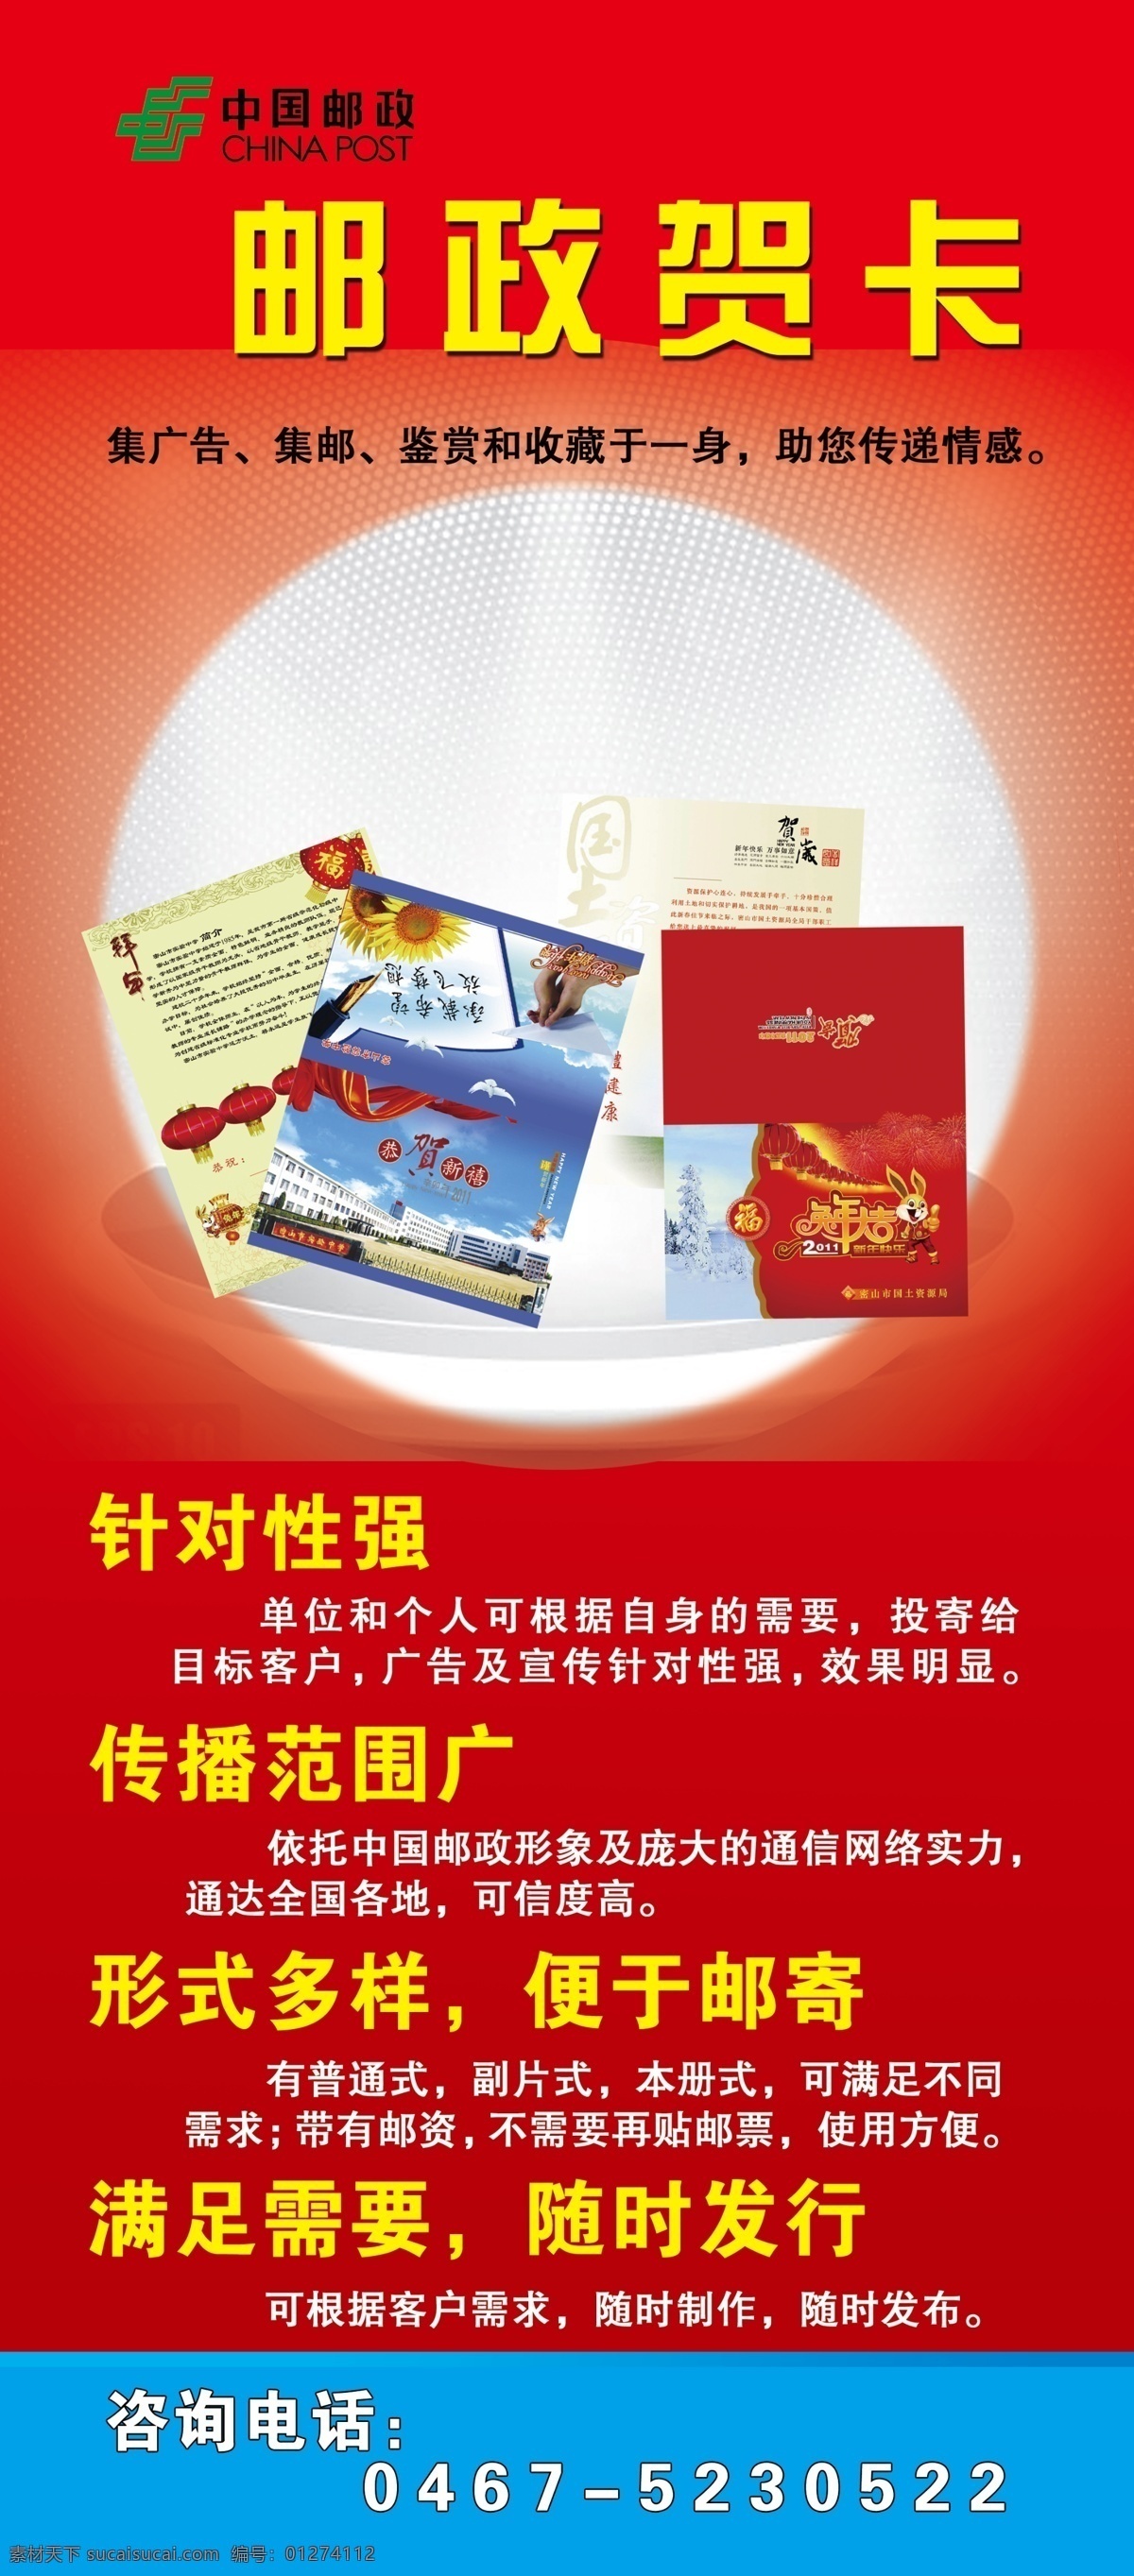 邮政展架 中国邮政 展架 贺卡 展板模板 广告设计模板 源文件